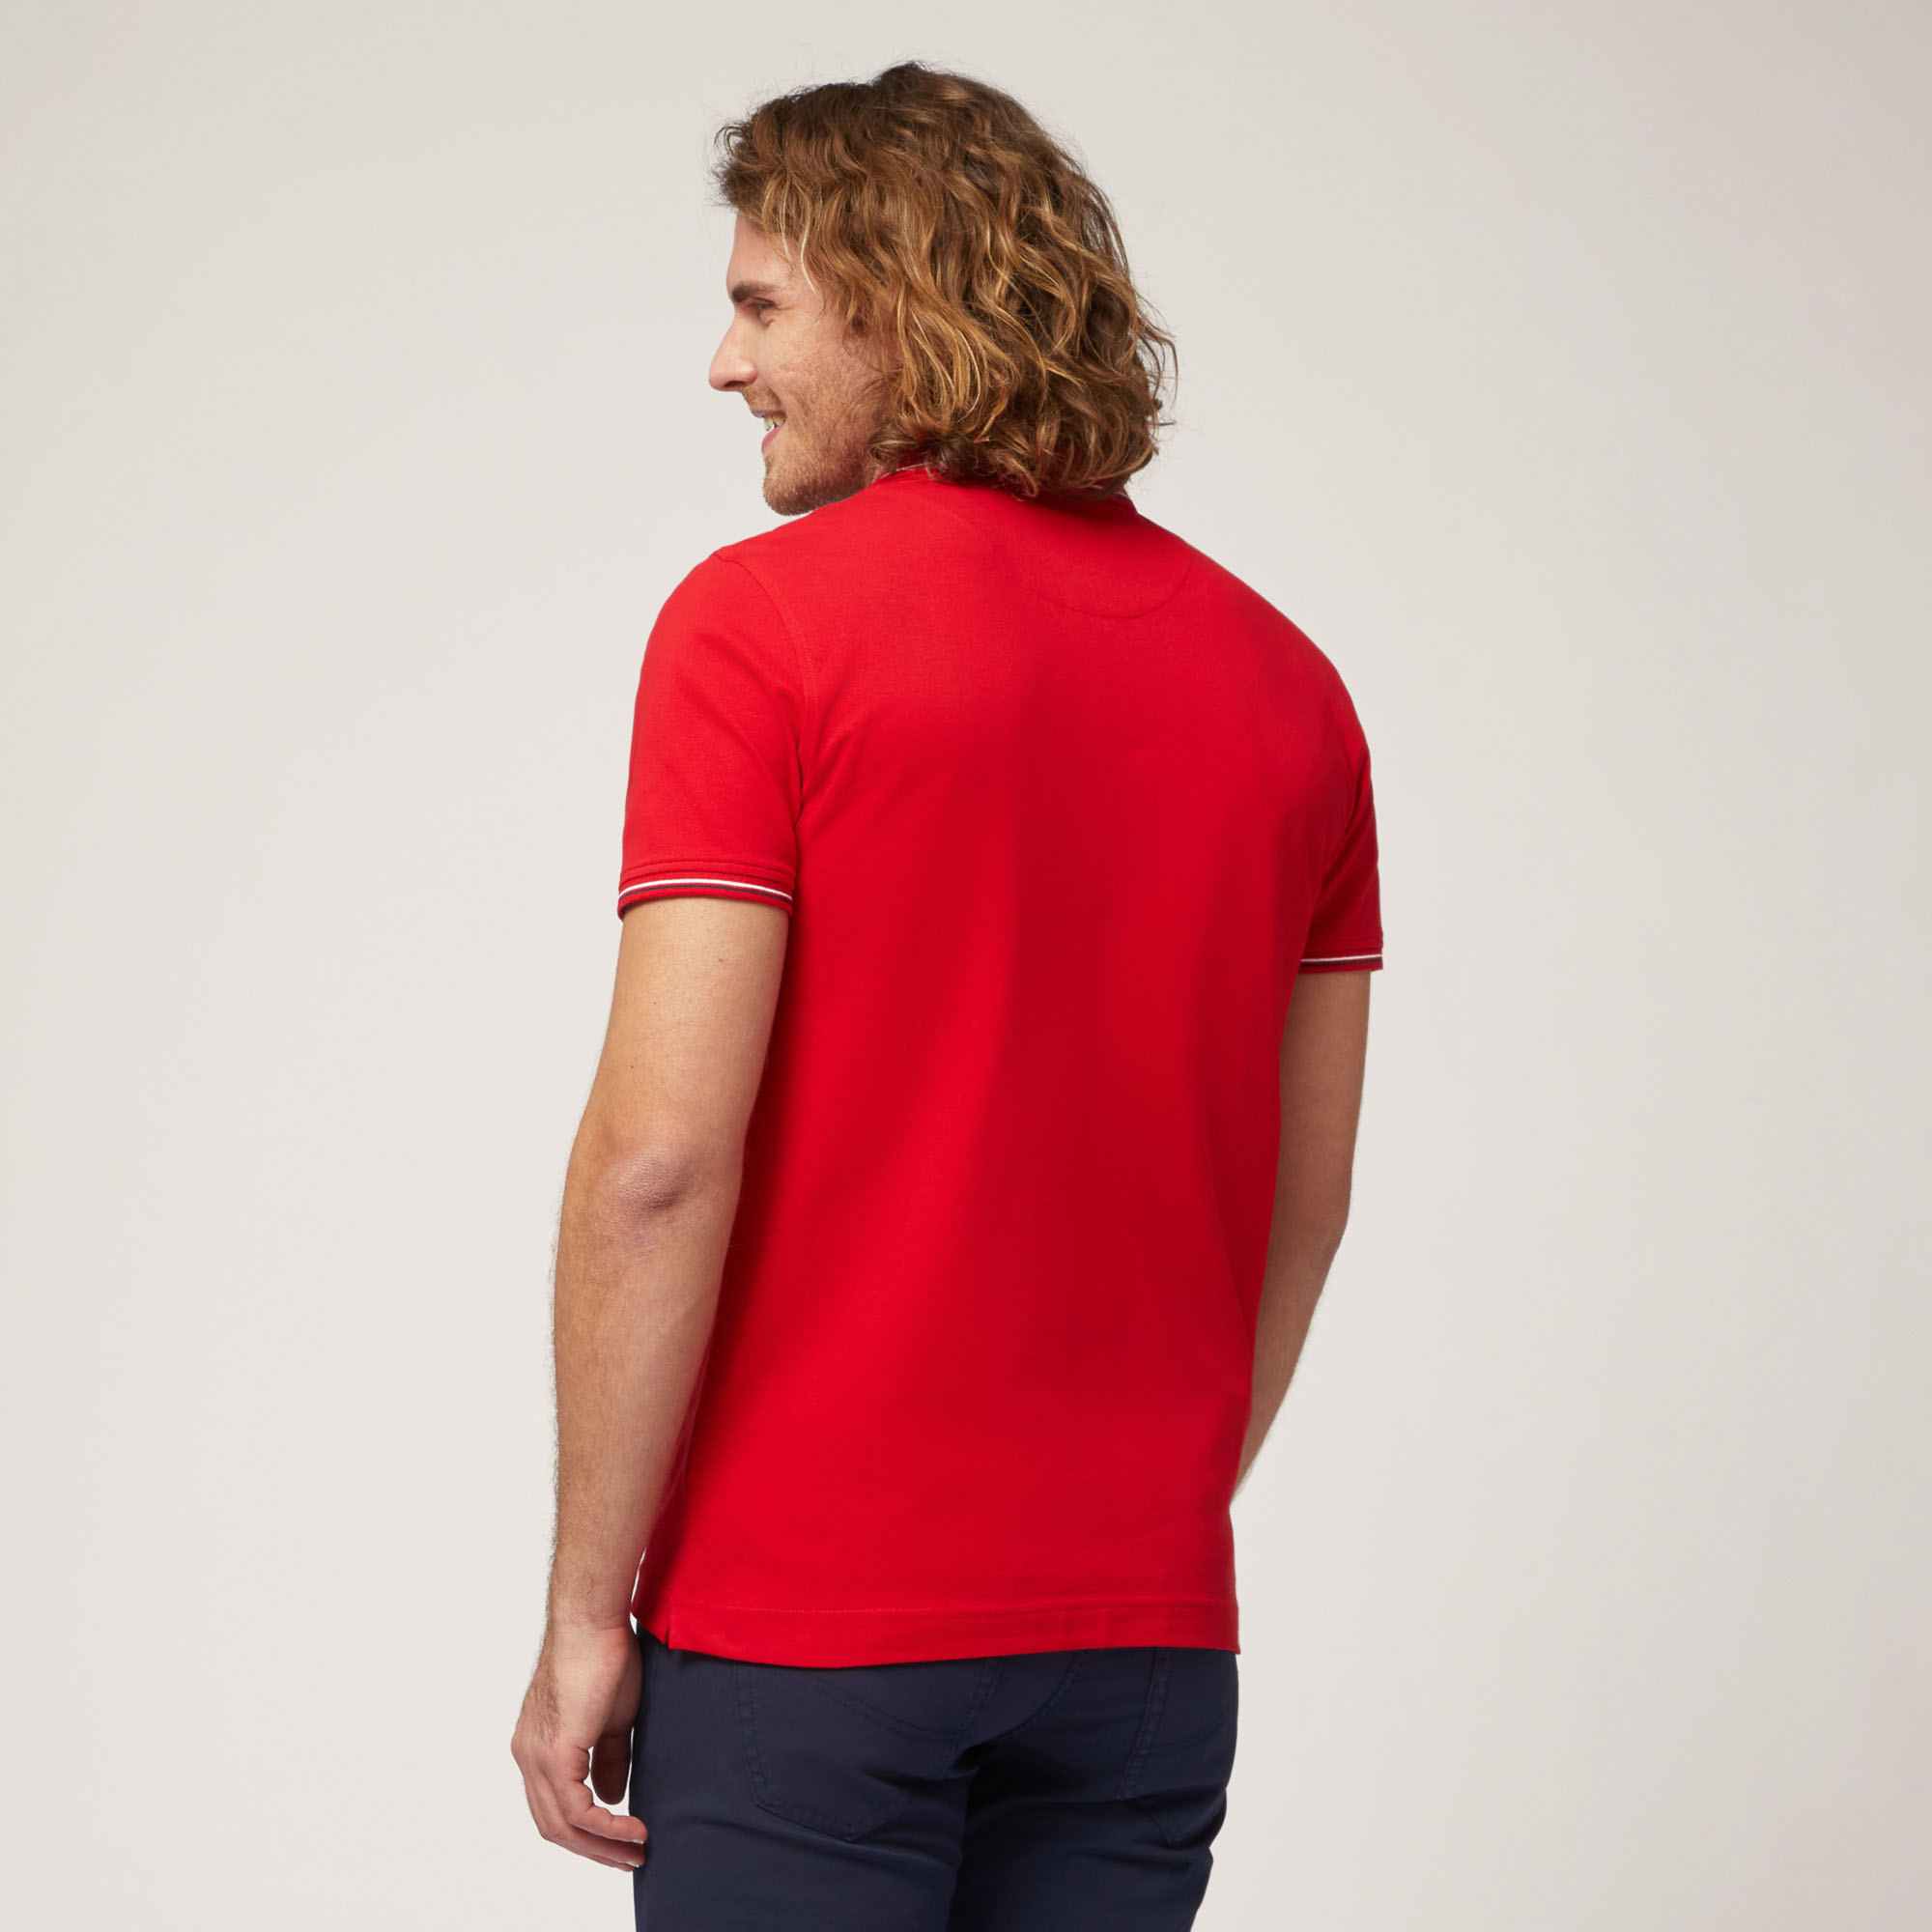 Poloshirt mit Streifen-Details, Rot, large image number 1